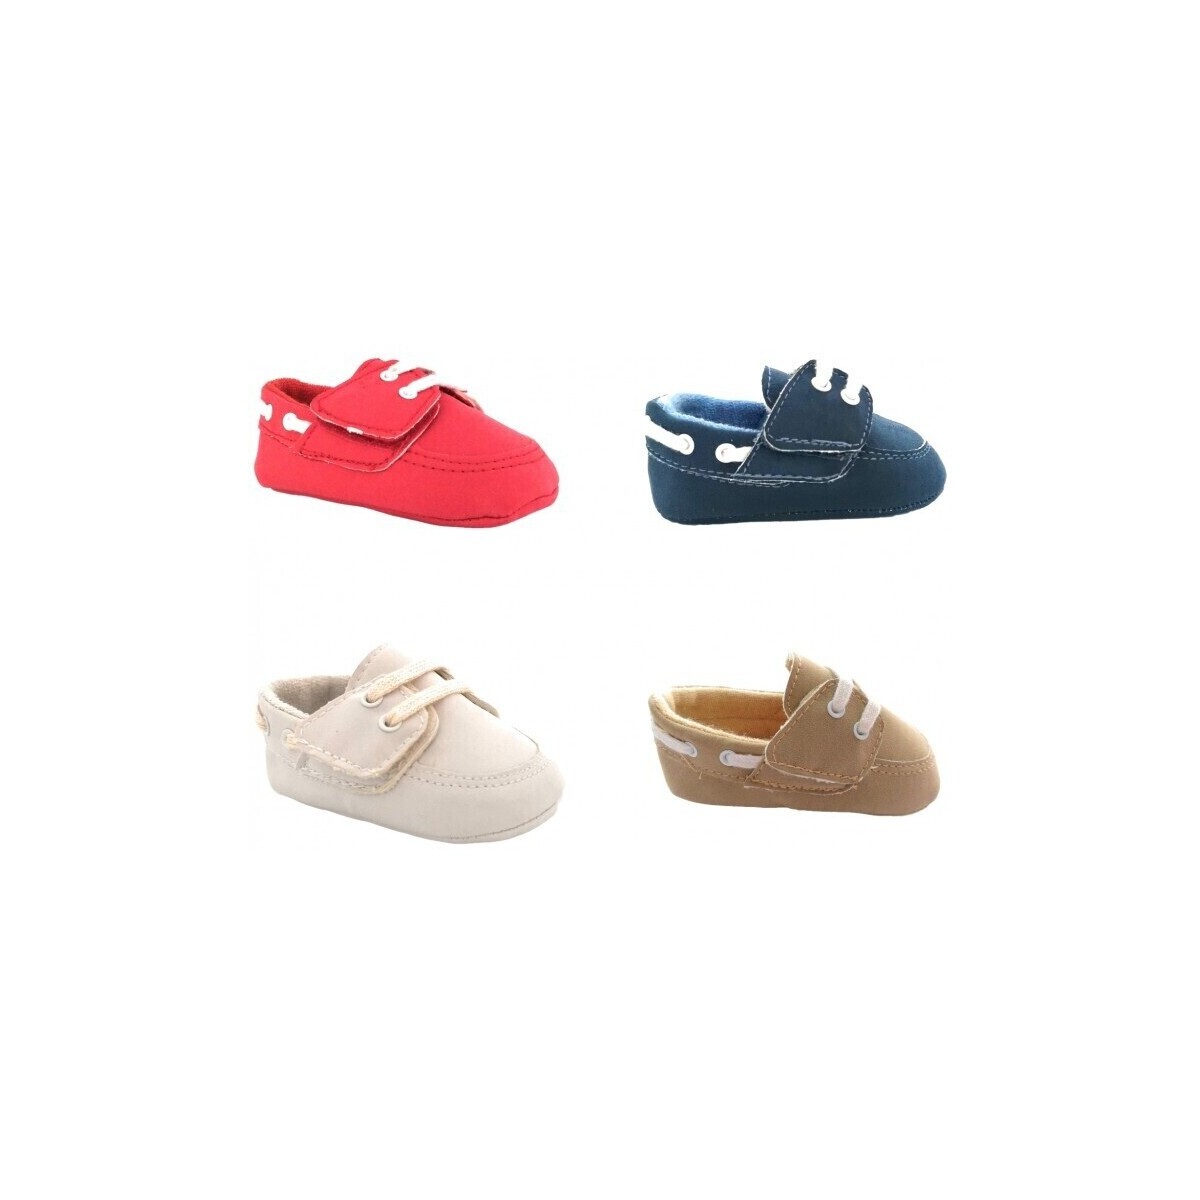 Παπούτσια Αγόρι Σοσονάκια μωρού Colores 25348-15 Marine